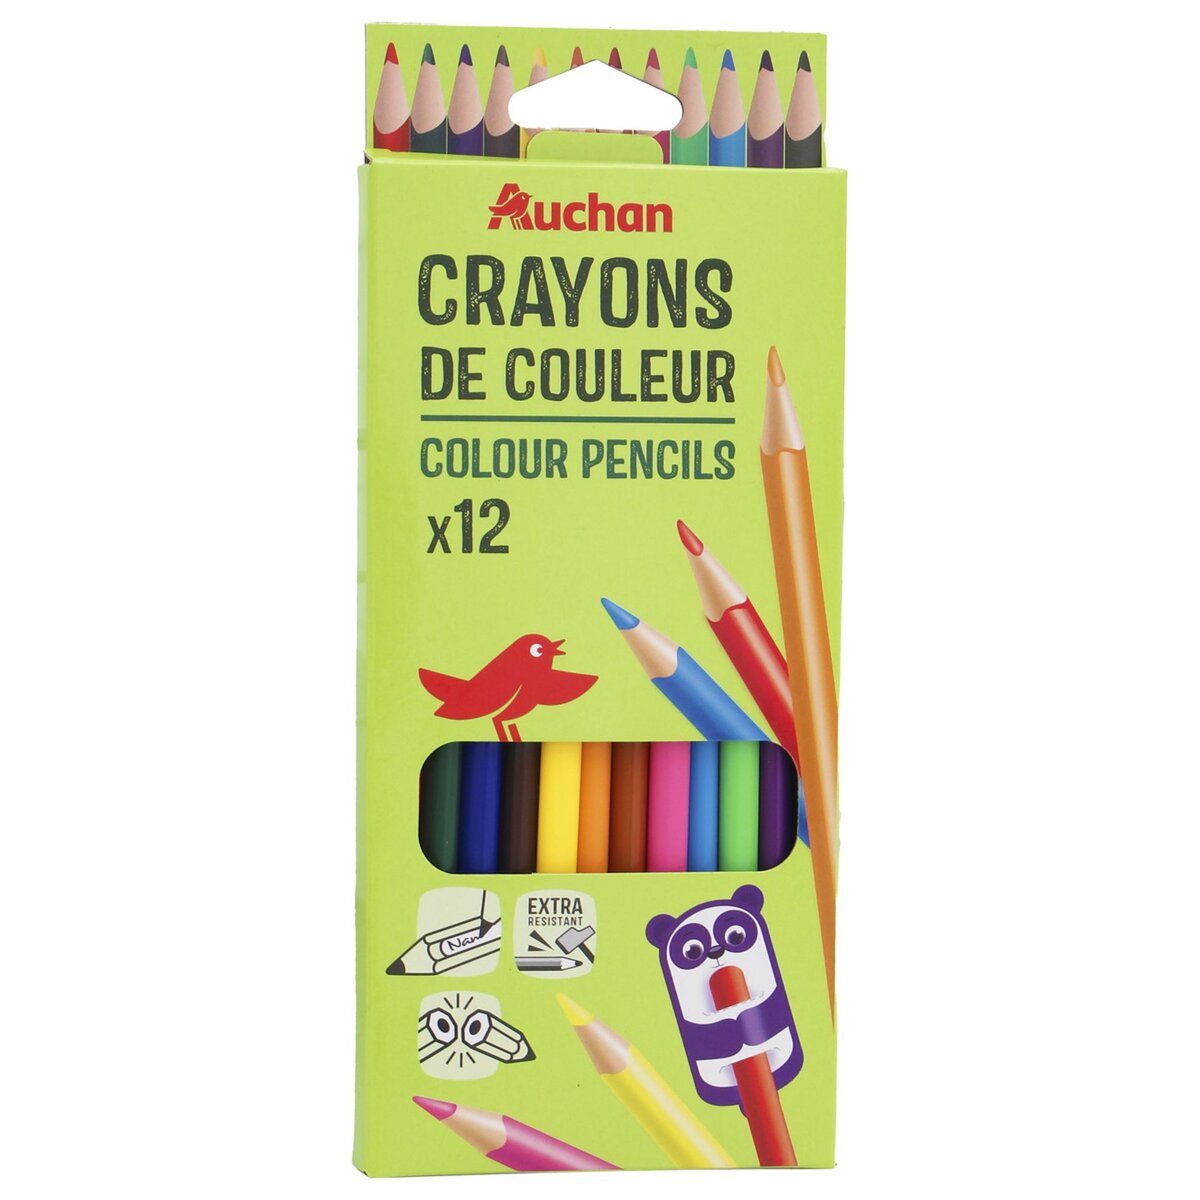 Les crayons de couleurs (partie 2)